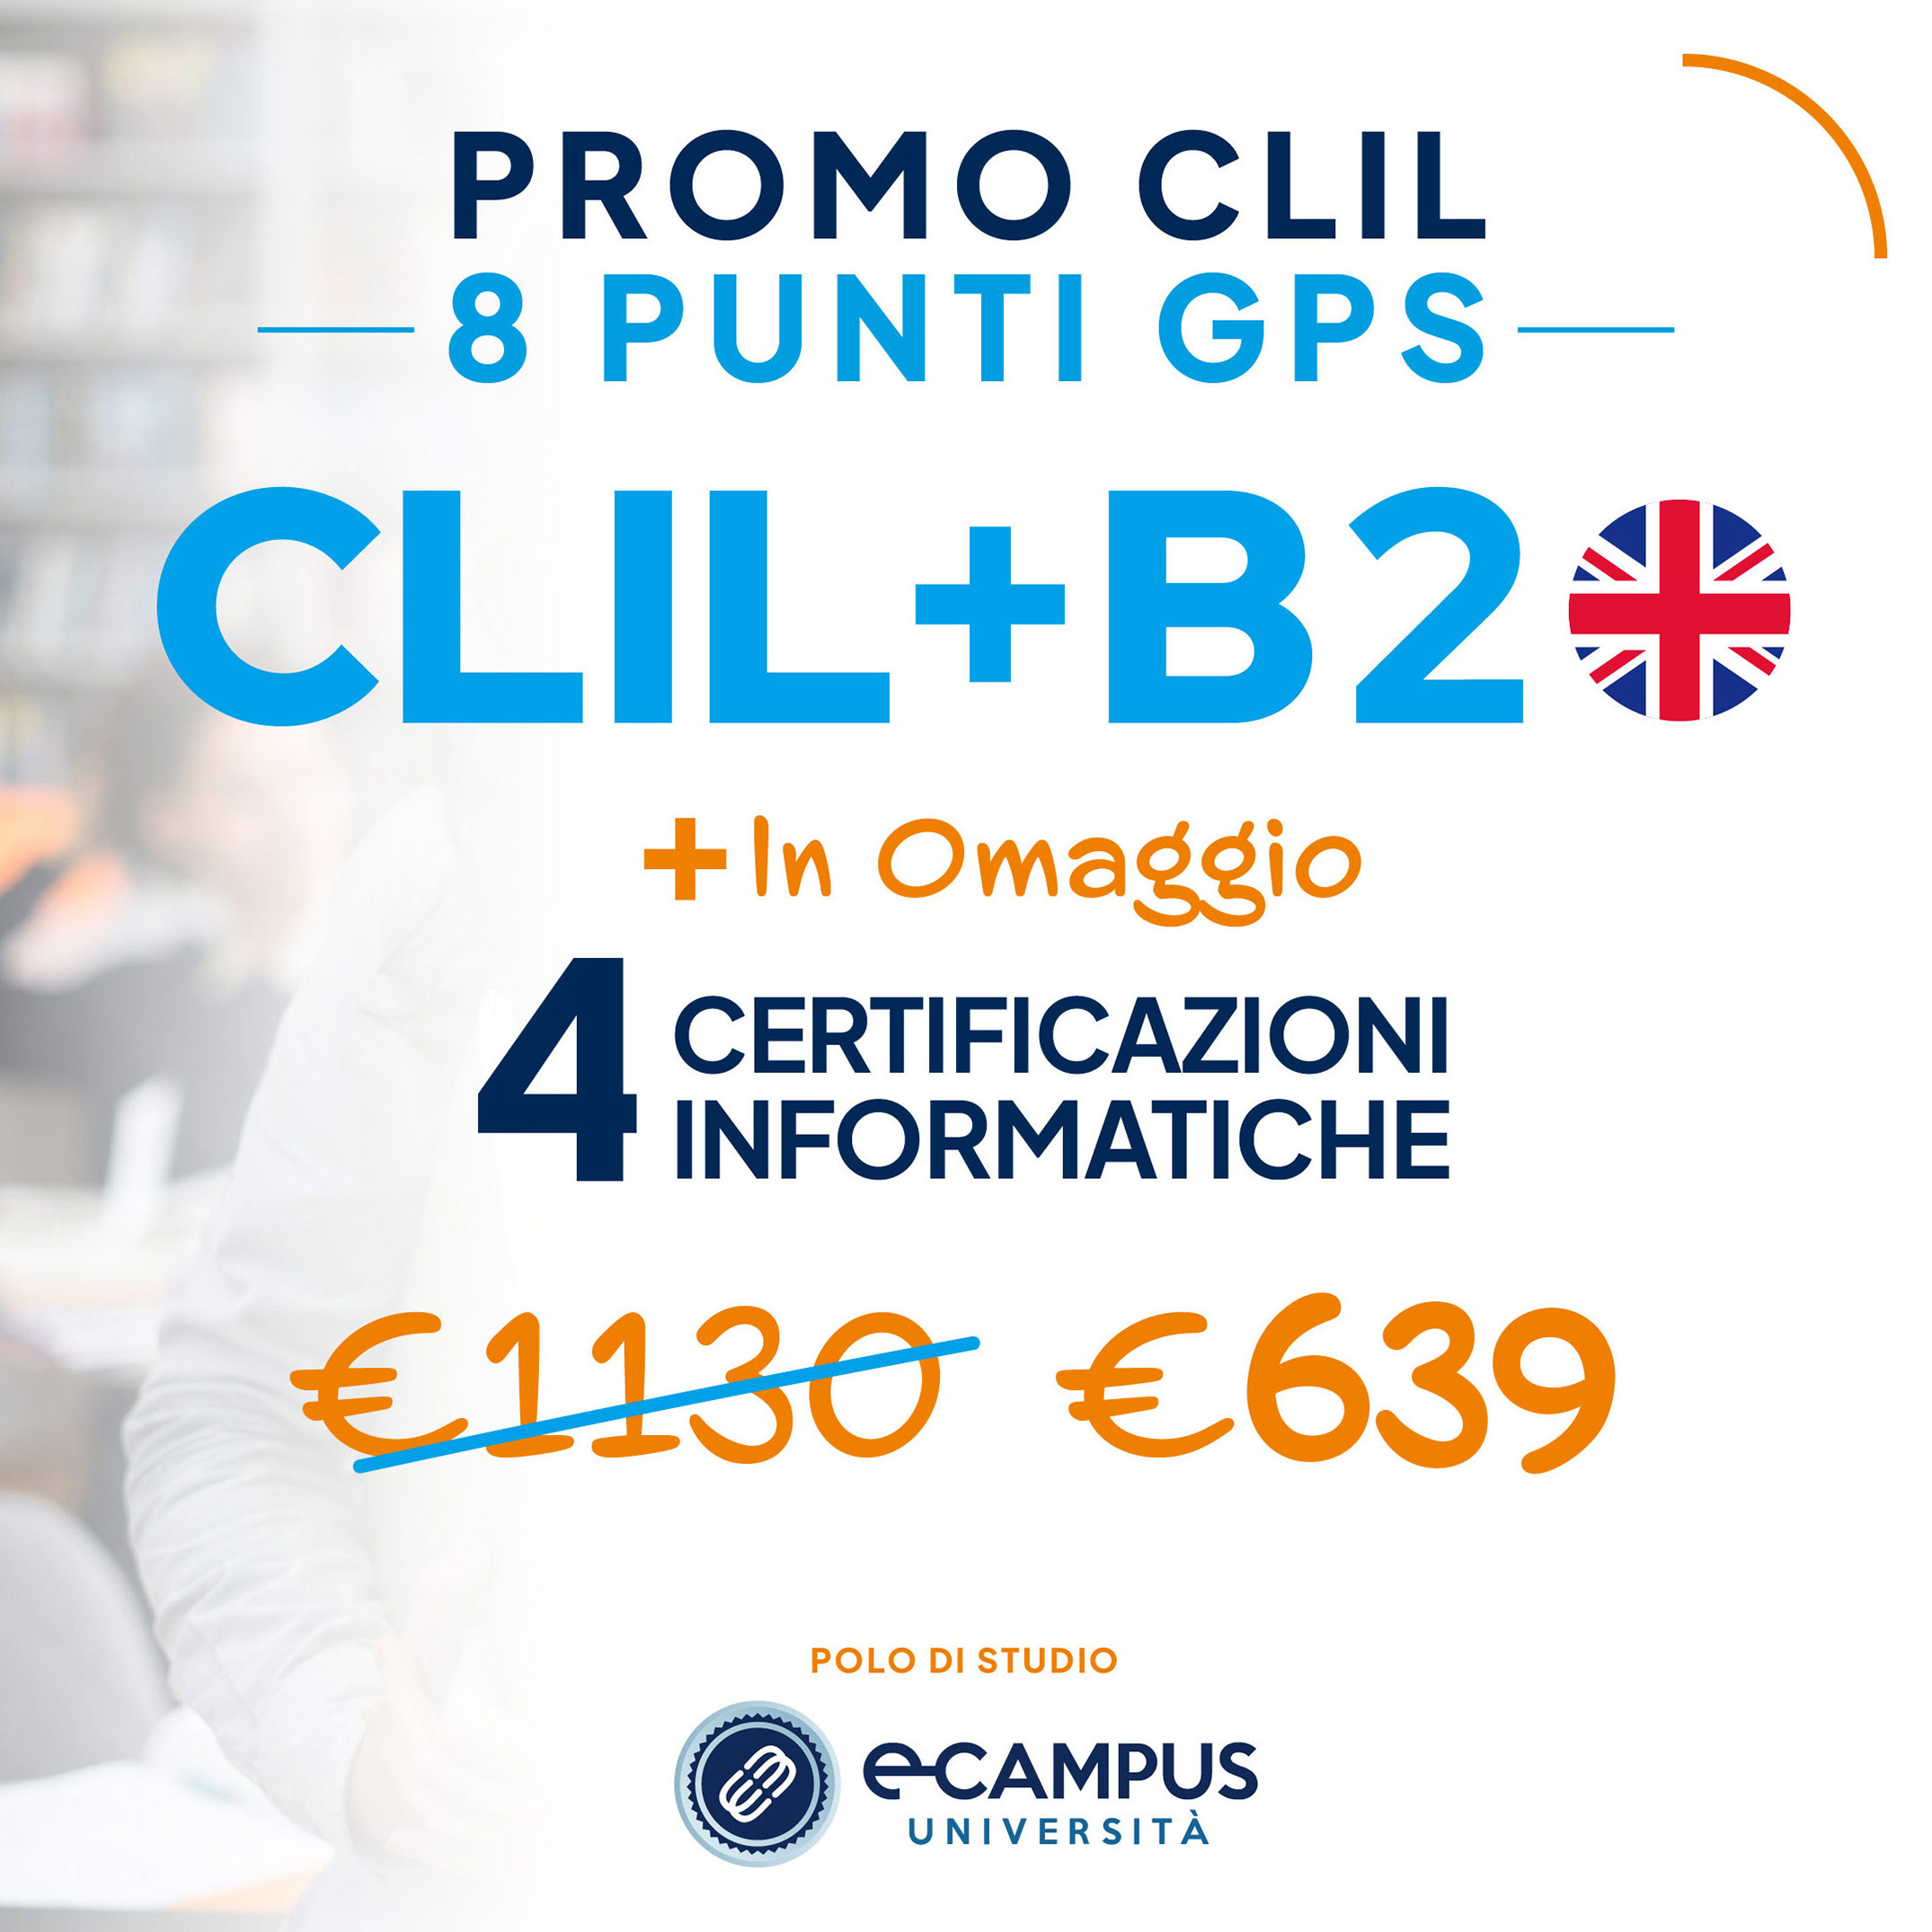 PROMO CLIL B2 8 Punti GPS - 4 Certificazioni Informatiche in Omaggio